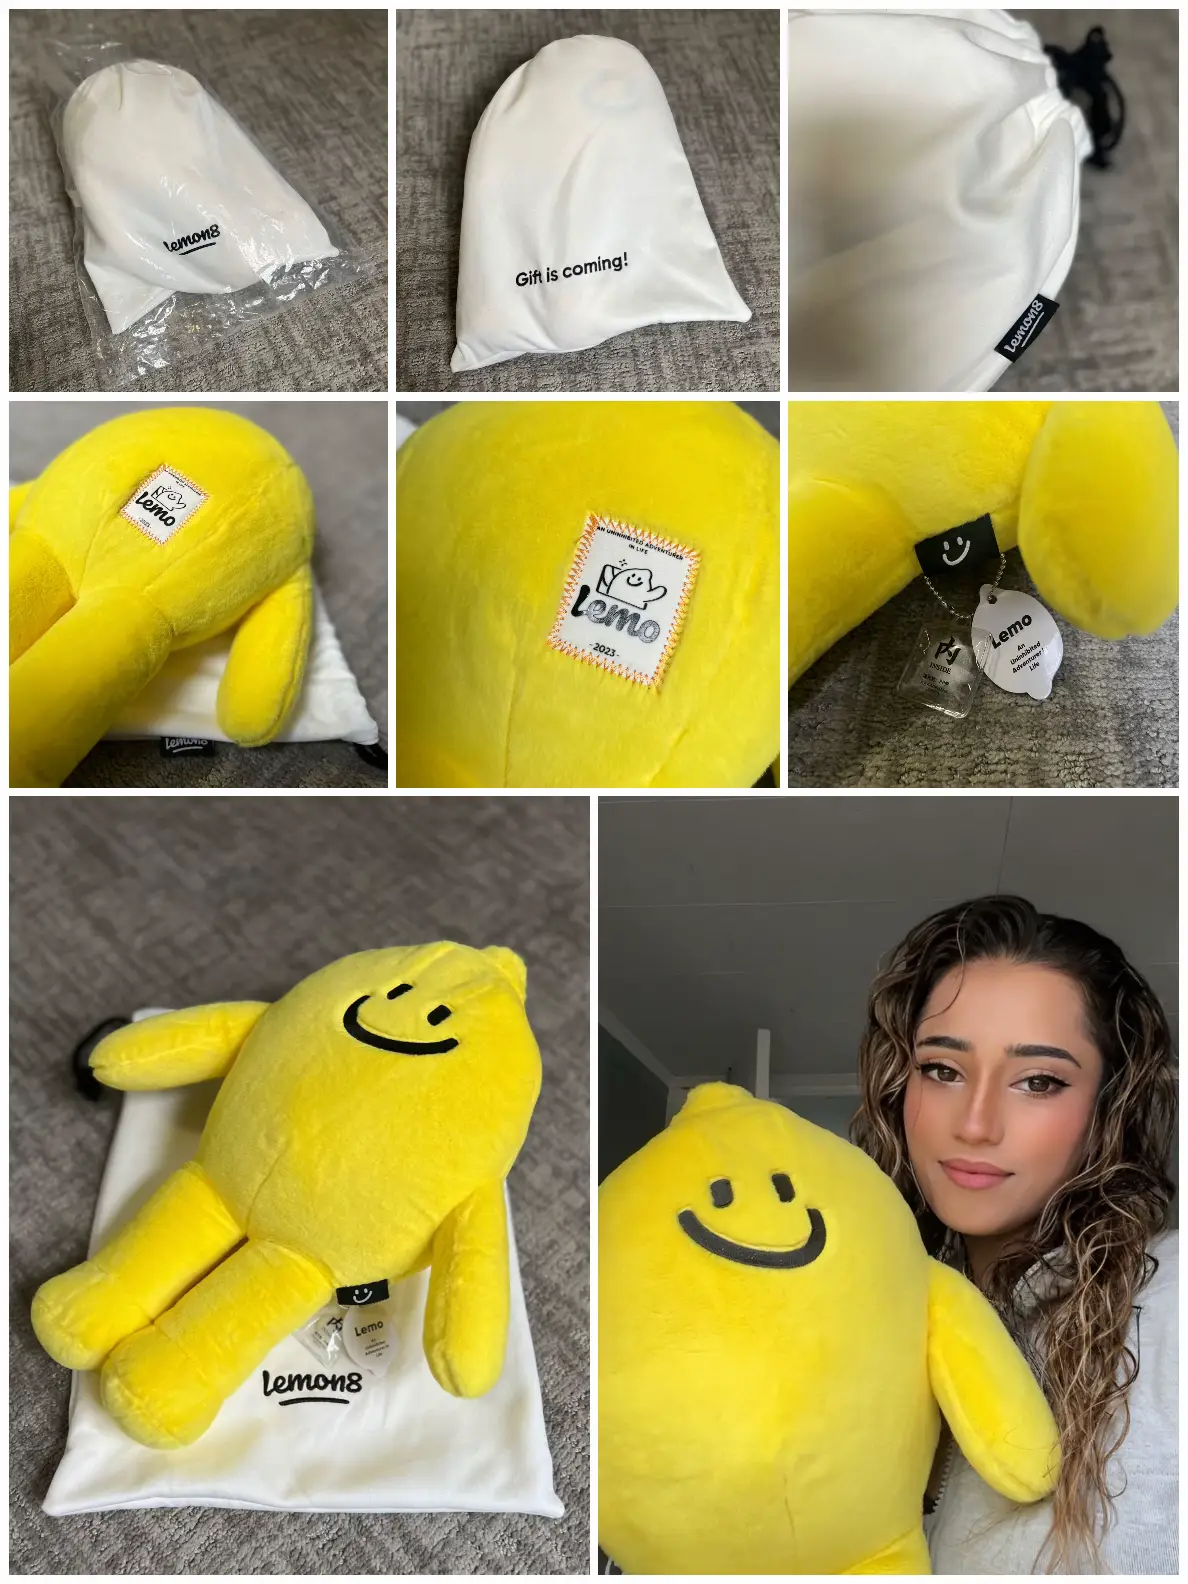 Where to Find Lemon8 Plush Toys - Lemon8 Search